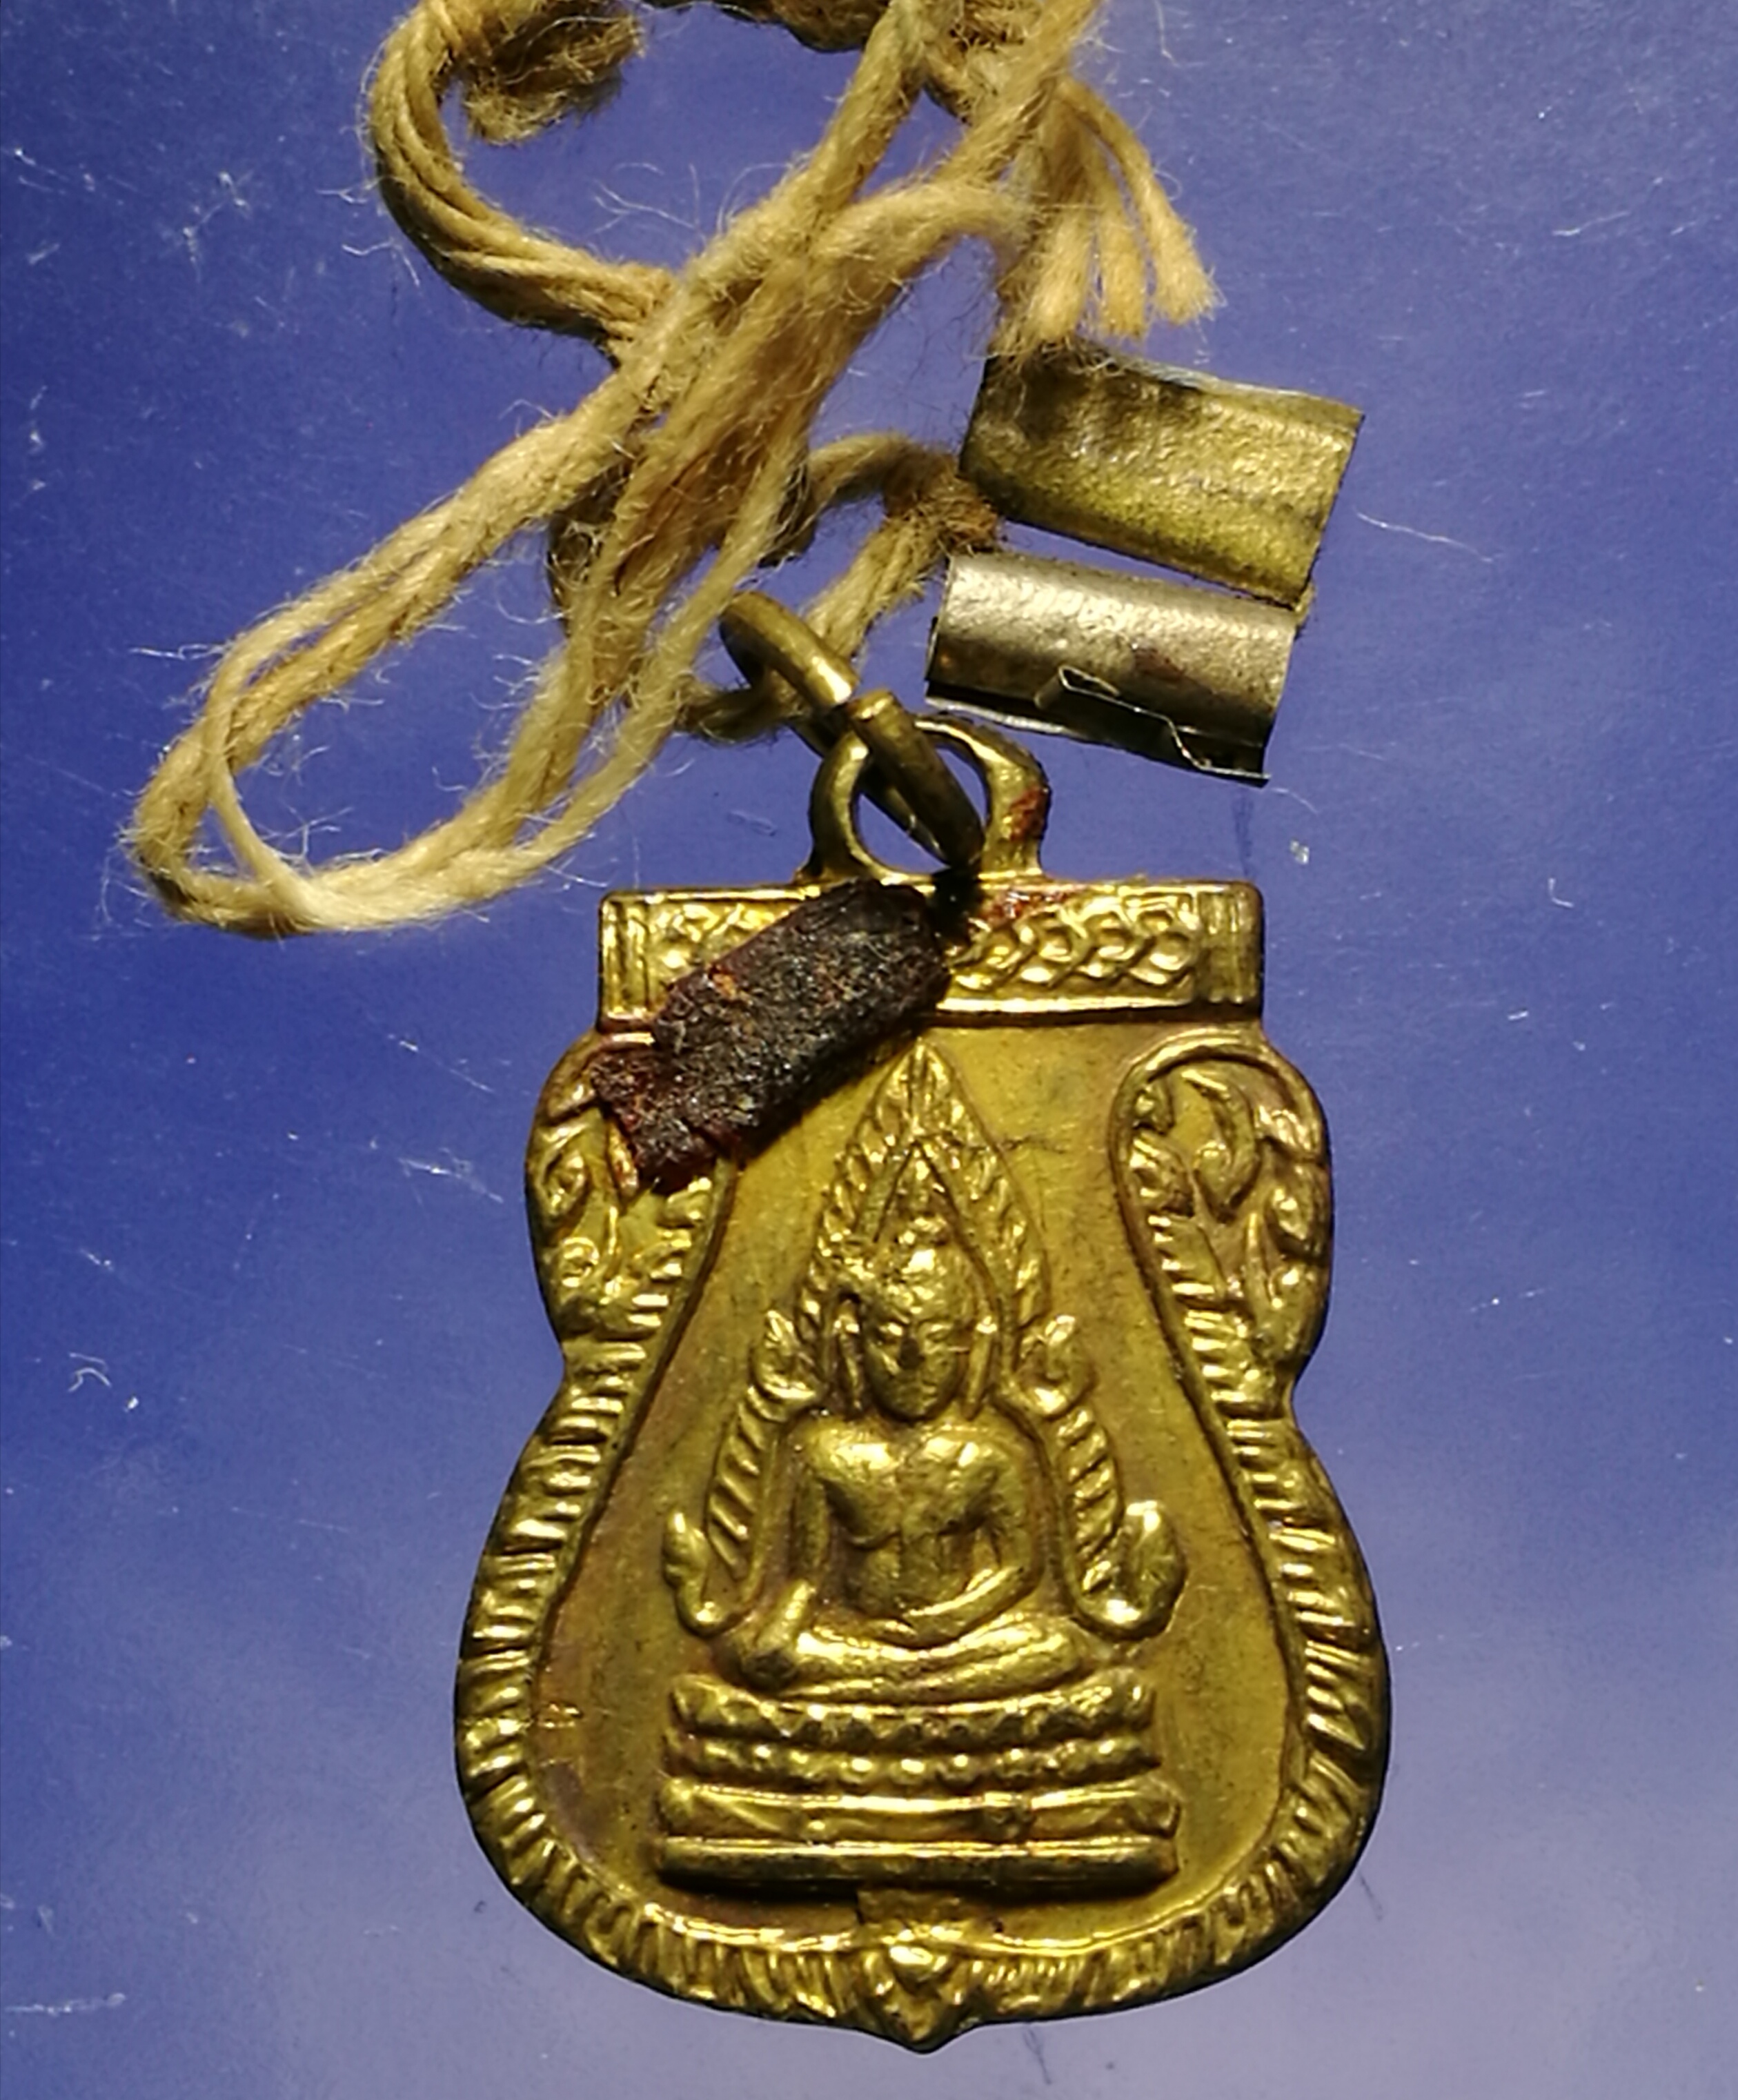 เหรียญพระพุทธชินราชหลังแม่นางกวัก ปี05 พร้อมสายสิญจน์ เดิมจากวัด